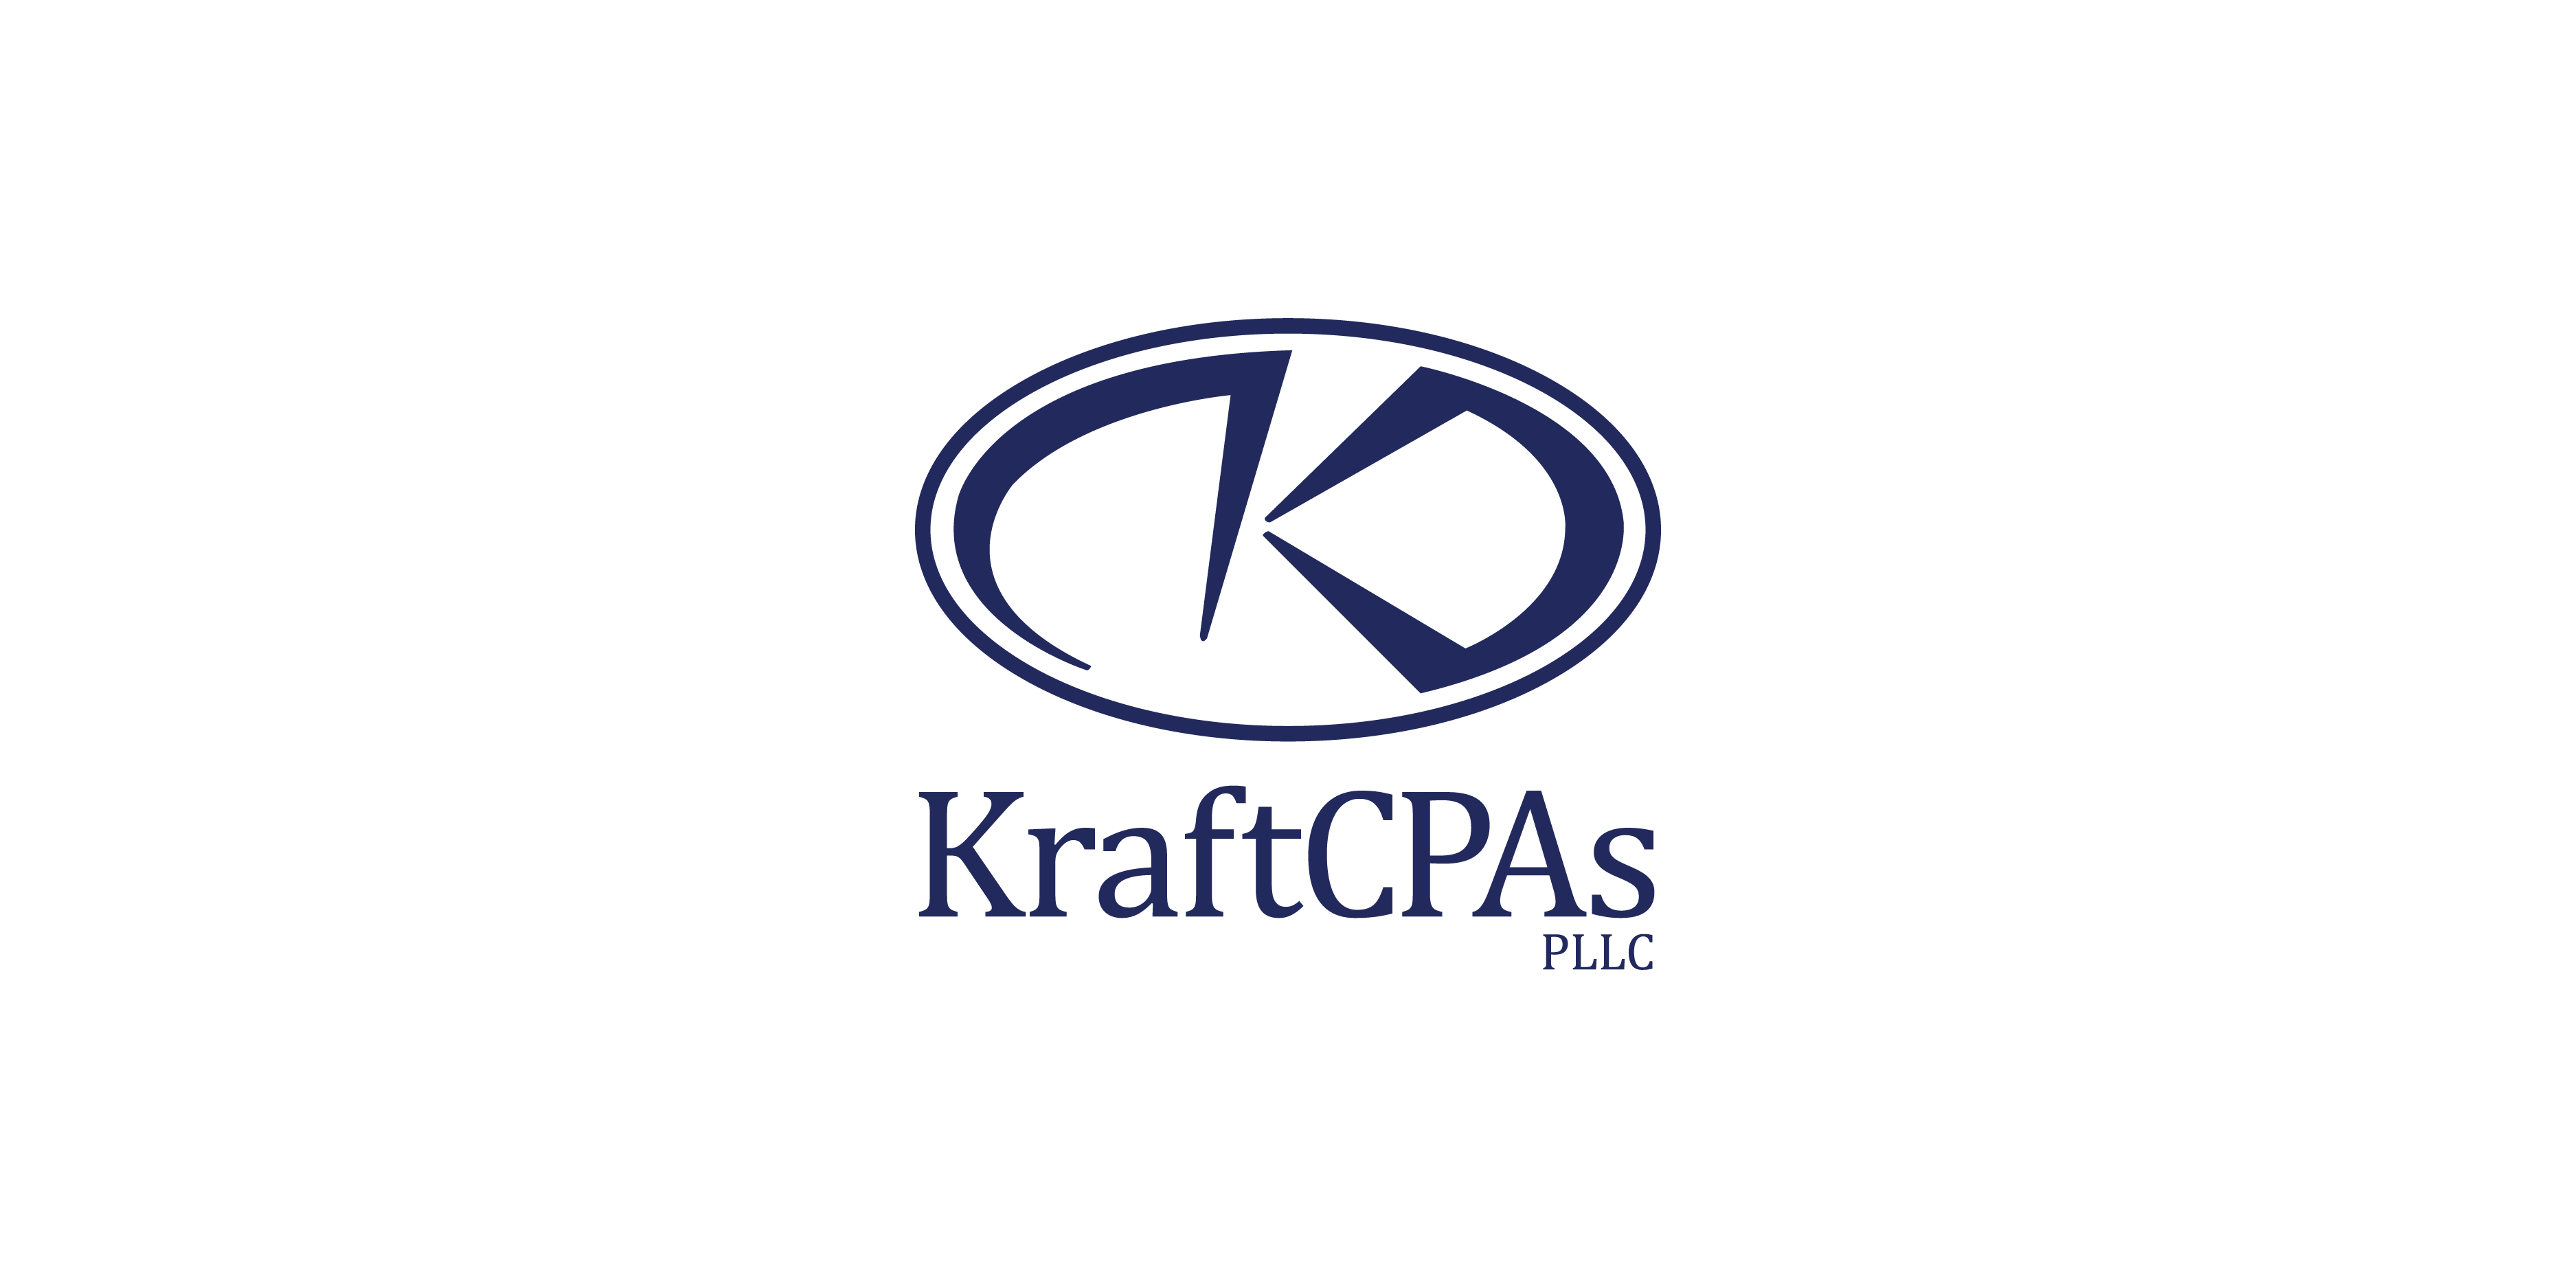 KraftCPAs